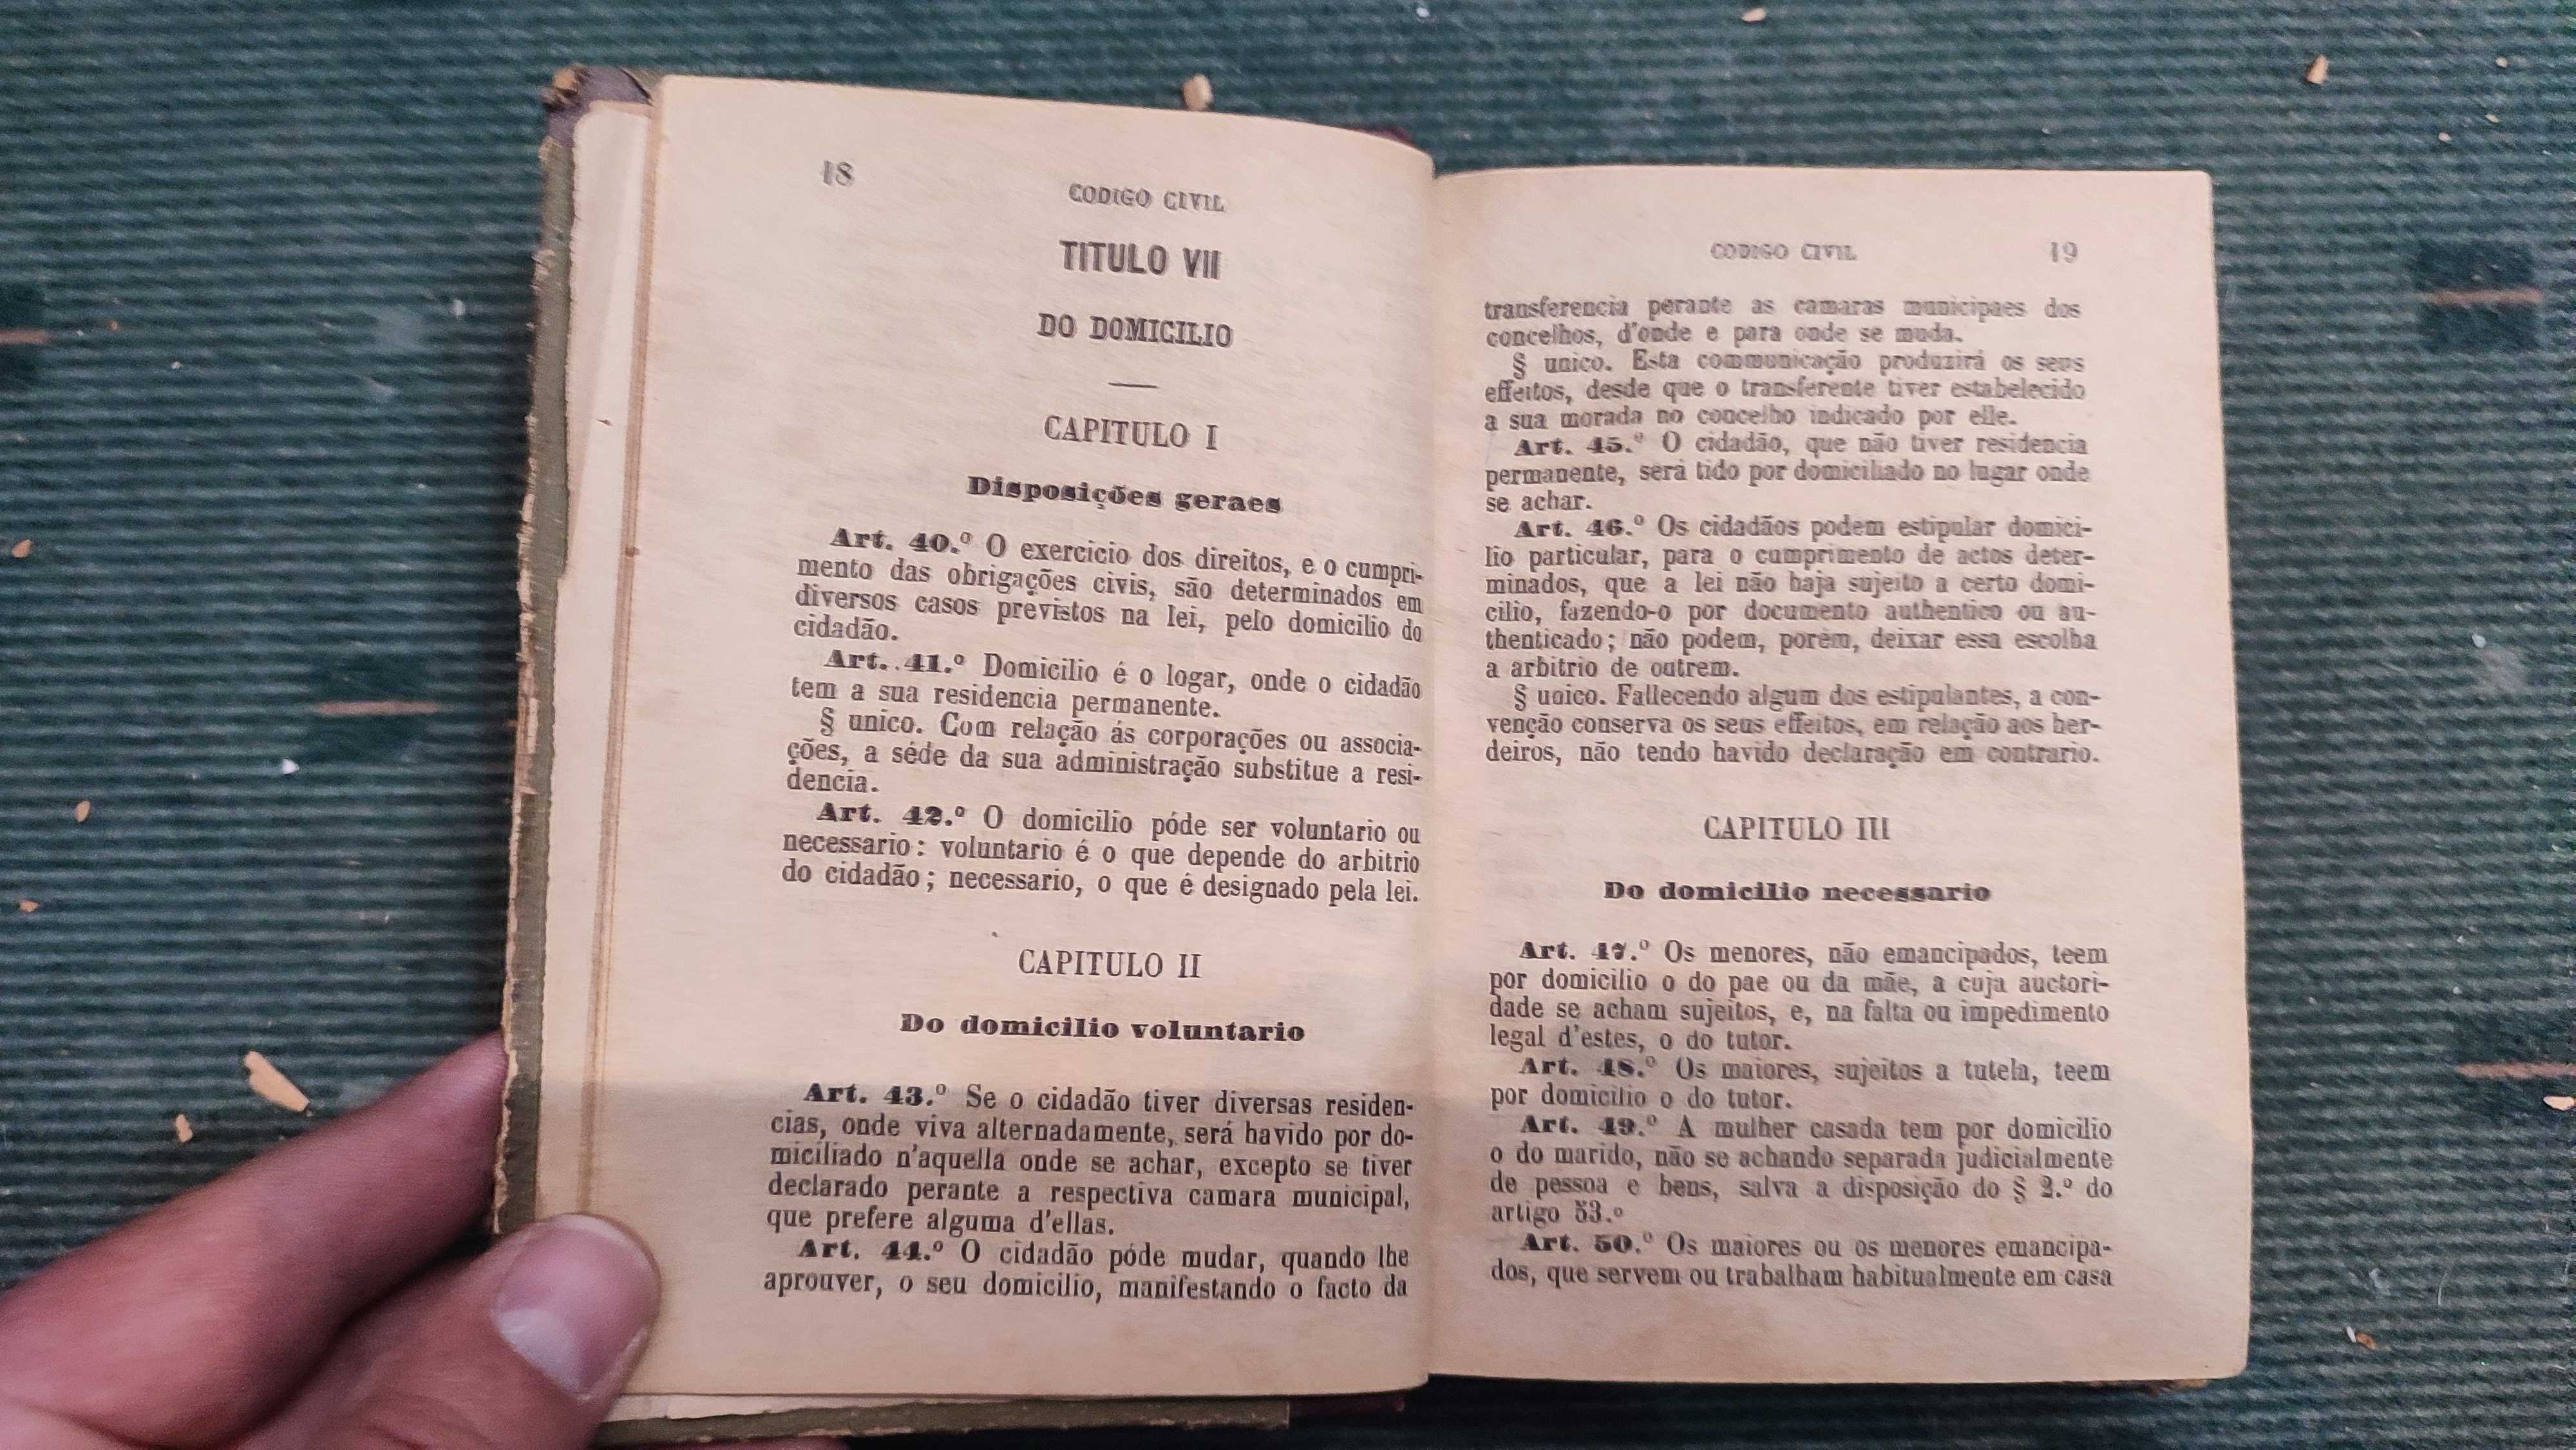 Codigo Civil - Edição Livraria Chardron, 1899